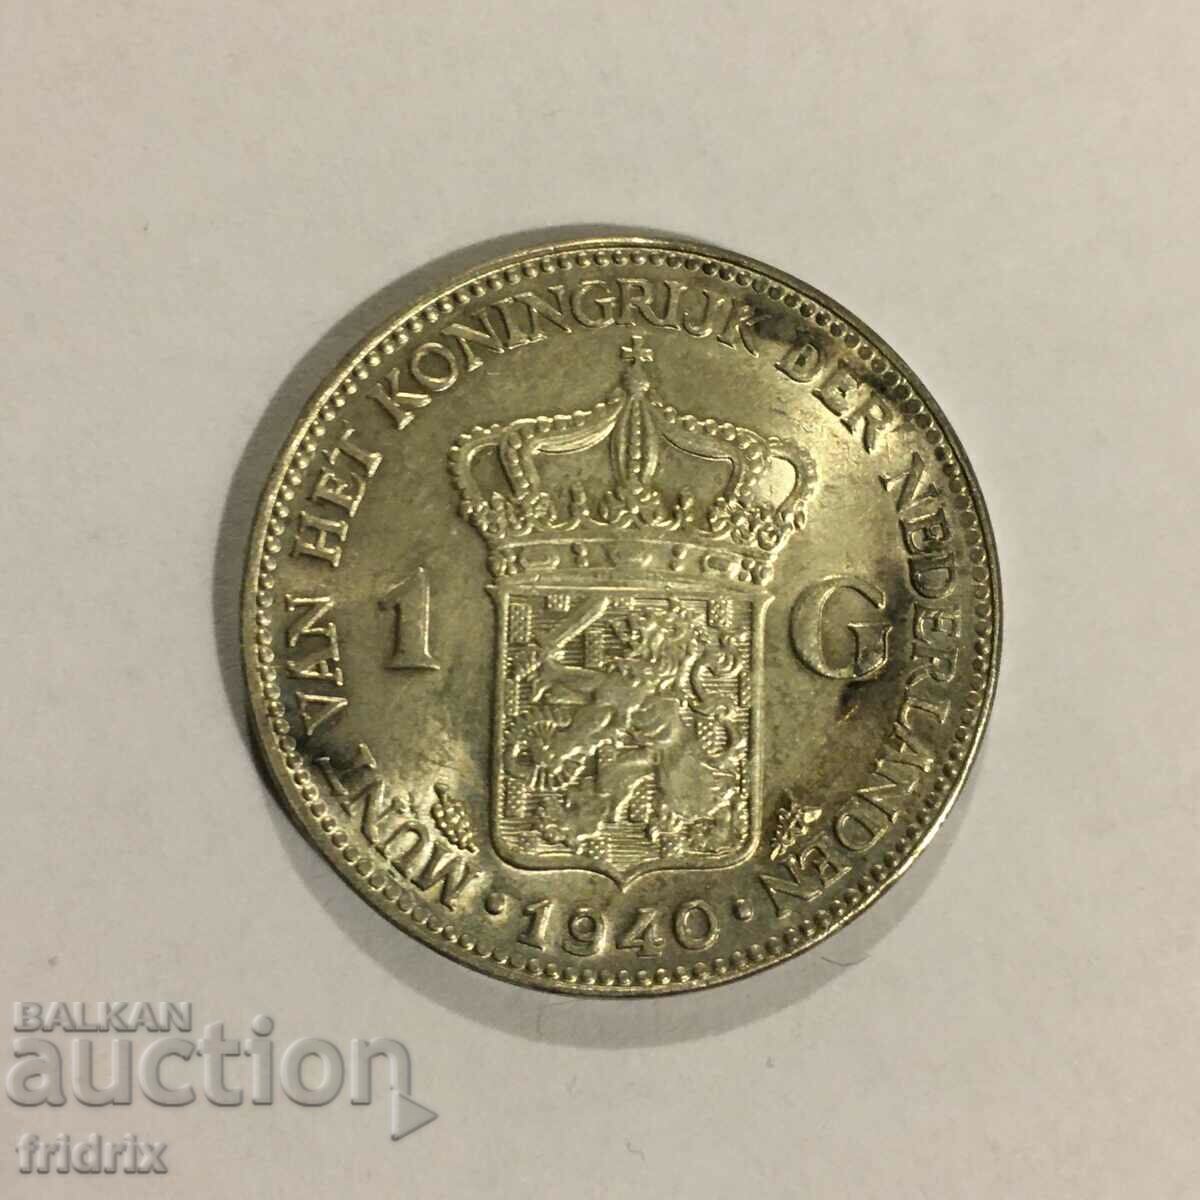 Netherlands 1 gulden 1940 / Netherlands 1 gulden 1940 UNC